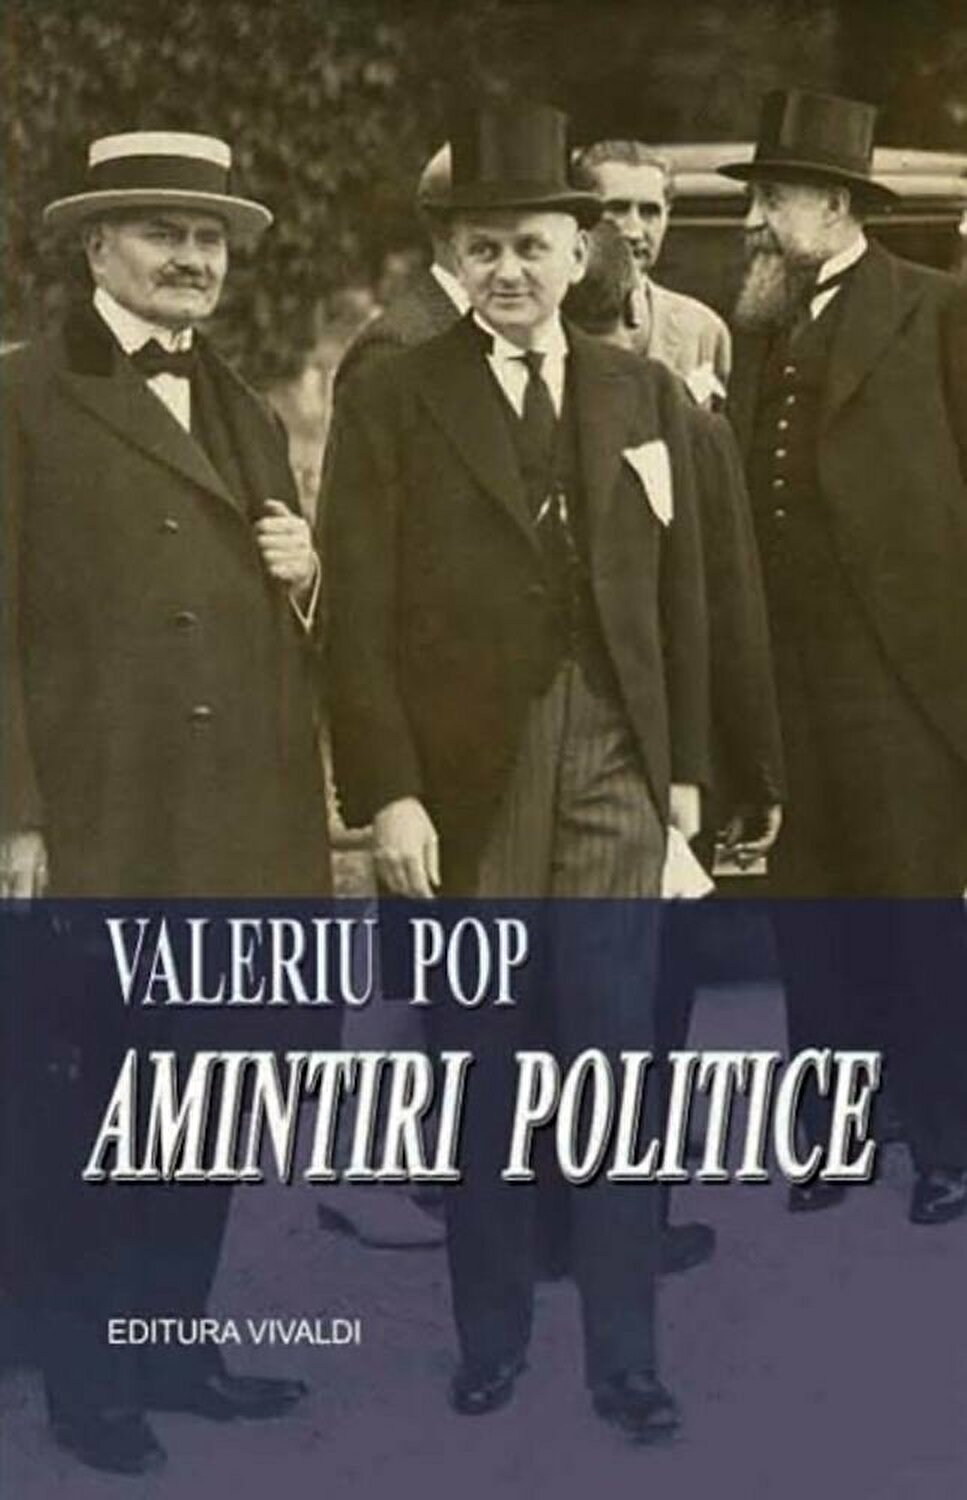 Amintiri politice | Valeriu Pop carturesti.ro